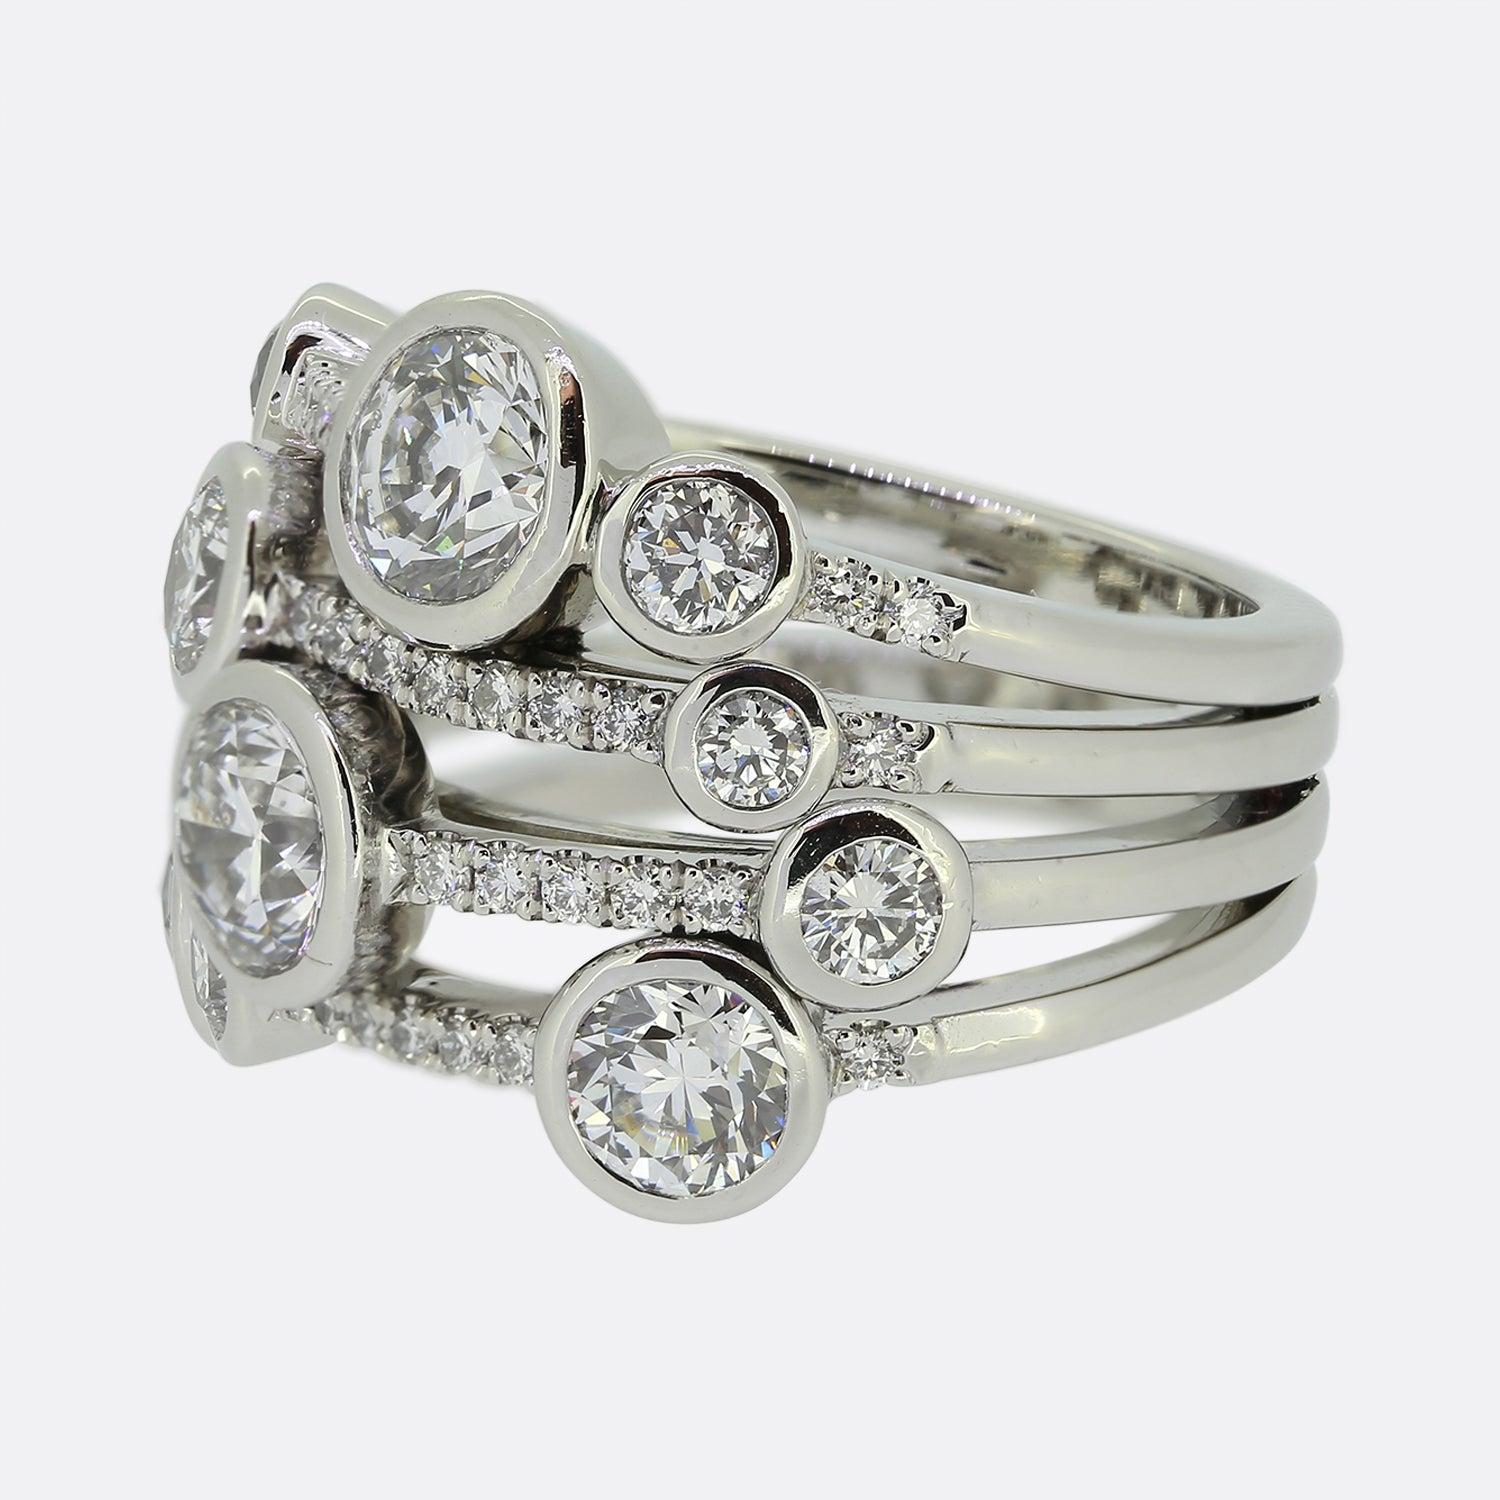 Hier haben wir einen wunderschön gearbeiteten Diamantring von dem weltbekannten Luxusschmuckdesigner Boodles. Dieser Ring ist Teil der Waterfall Collection und ist das große Modell. Die runden Diamanten im Brillantschliff sind in vier Reihen